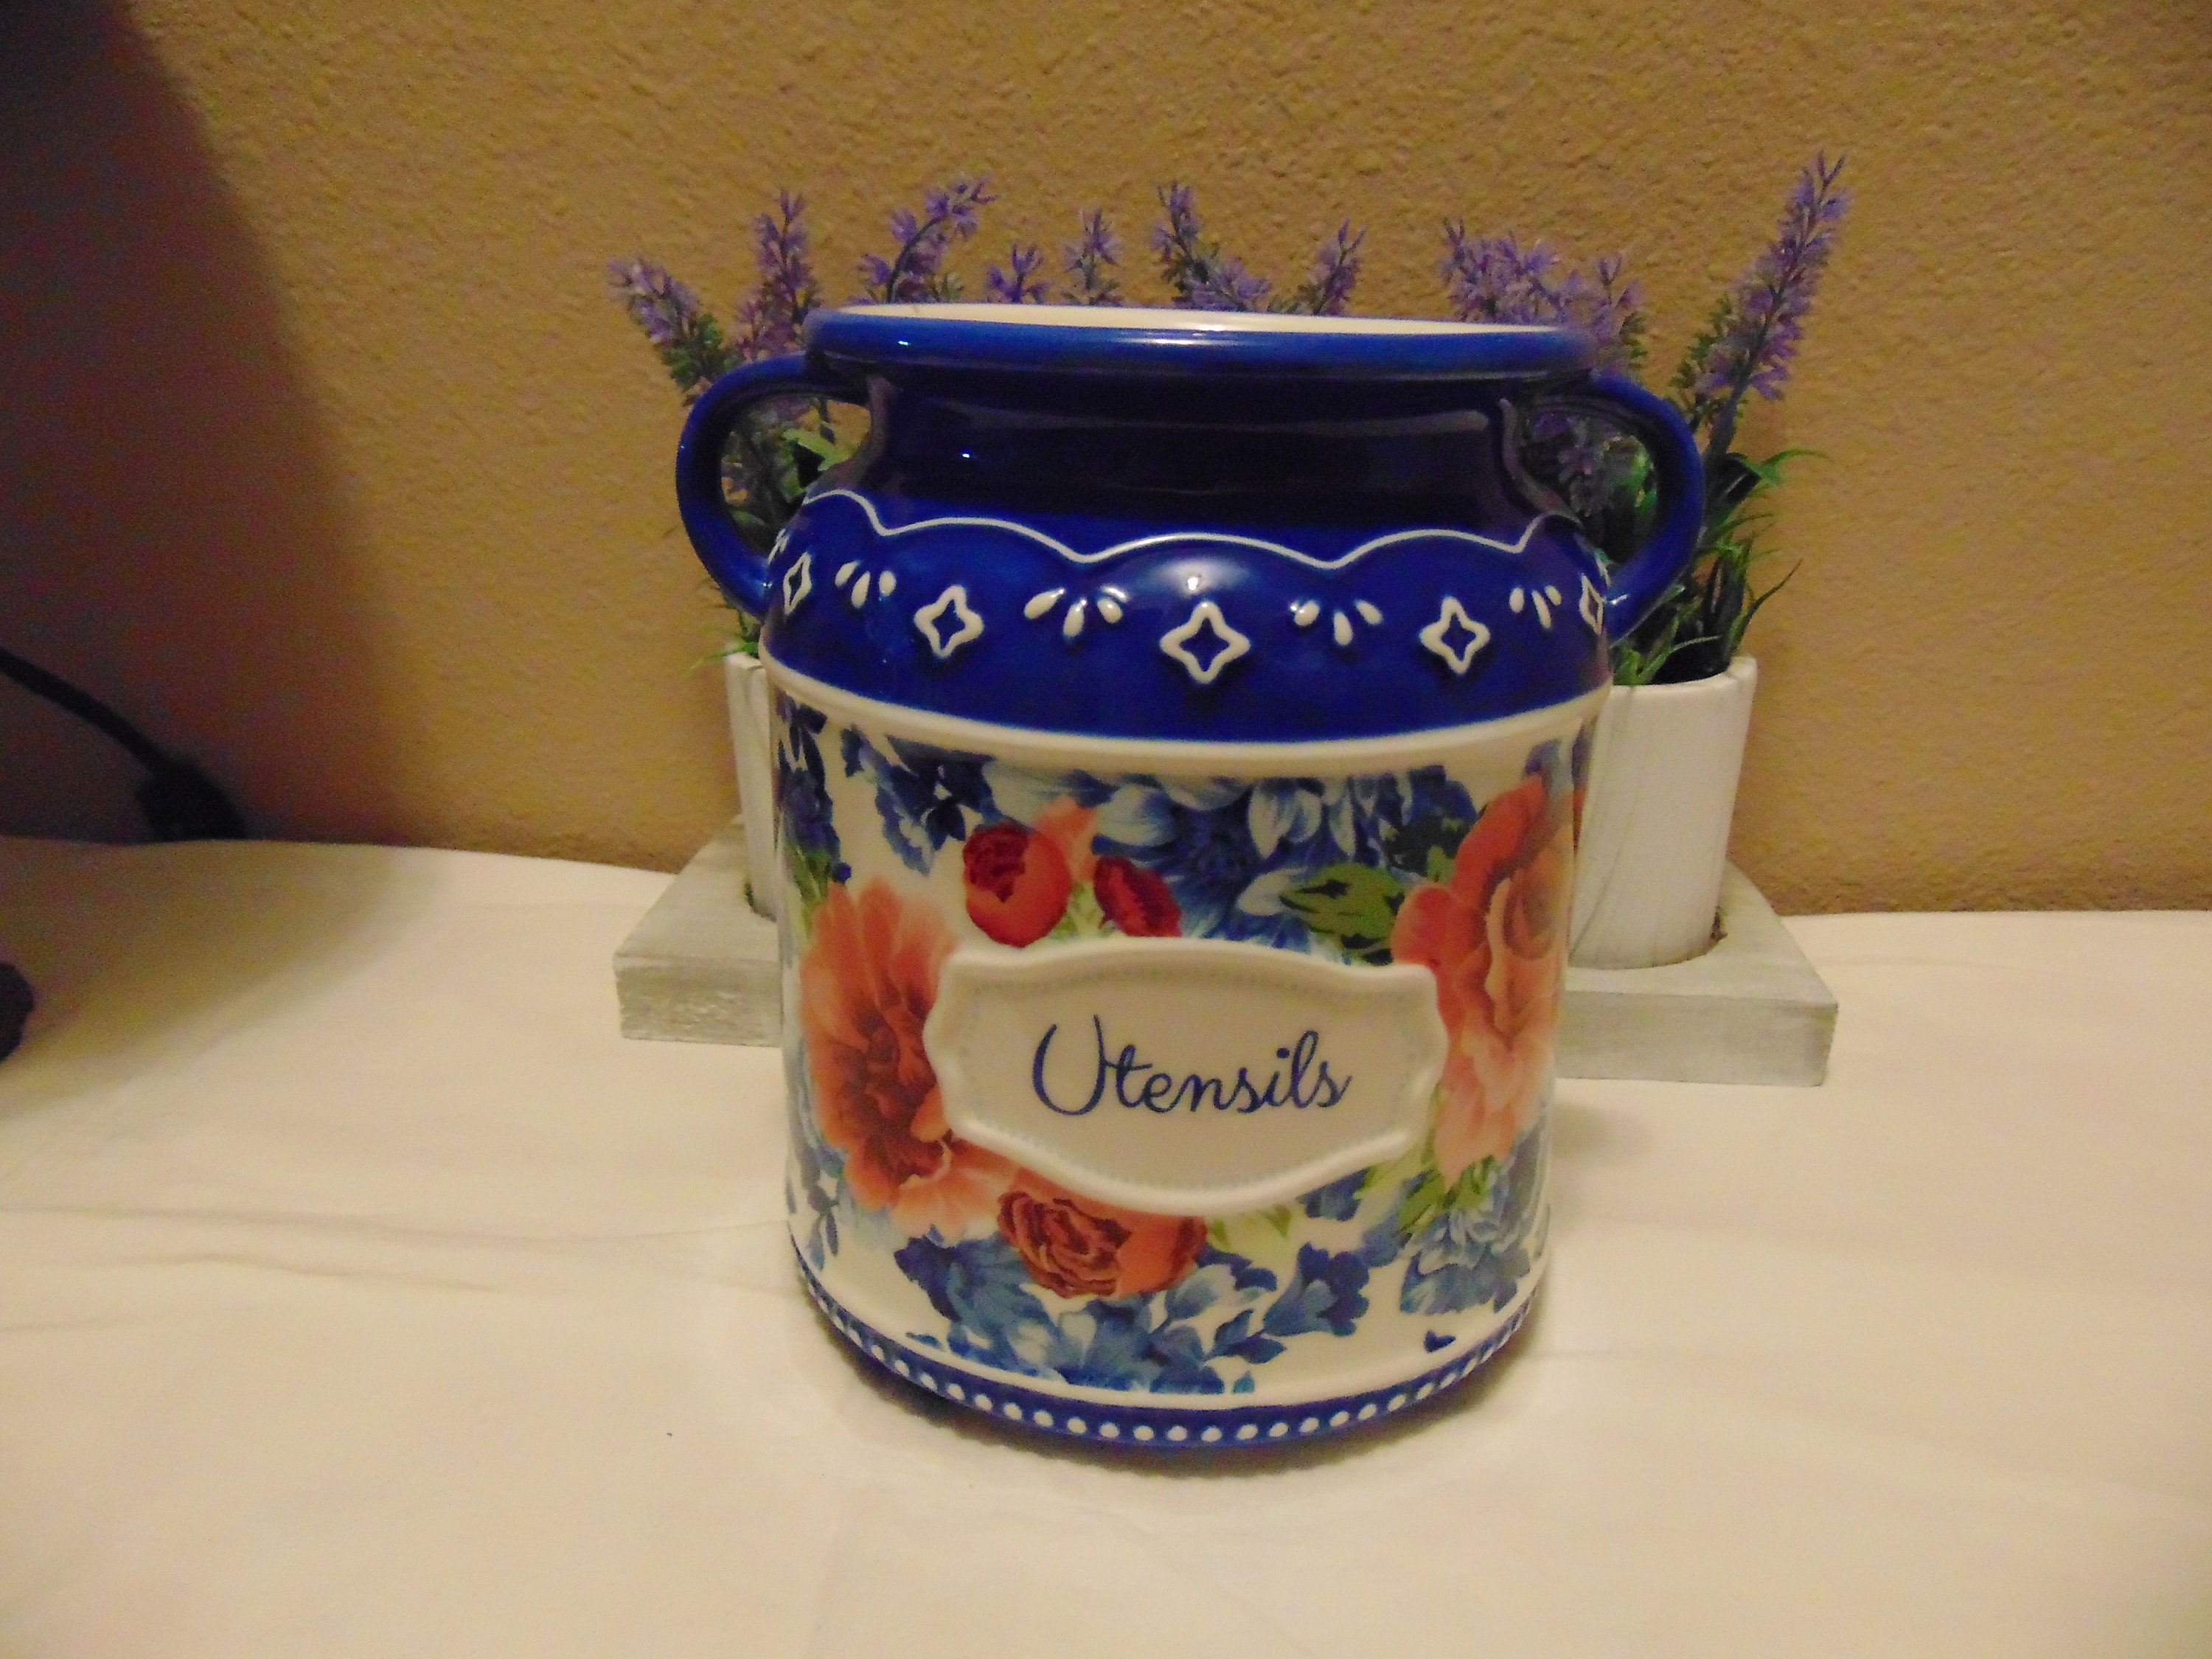 The Pioneer Woman Vintage Floral Utensil Crock & Tool Set - Zars Buy